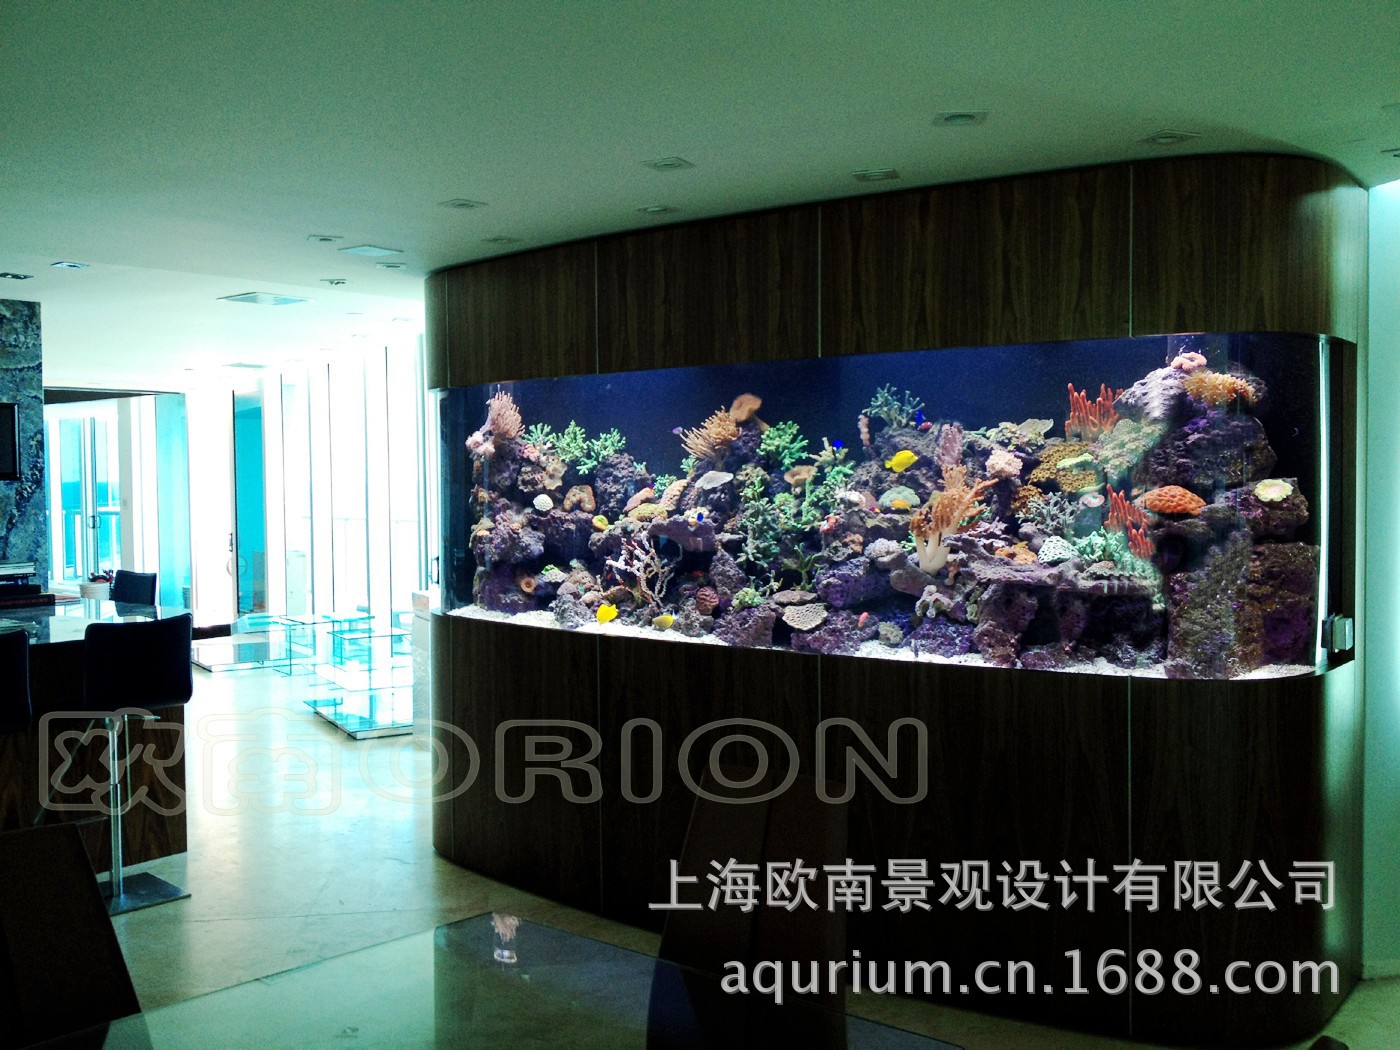 上海生态鱼缸 玻璃海水鱼缸 水族箱 生态鱼缸厂商 观赏鱼缸